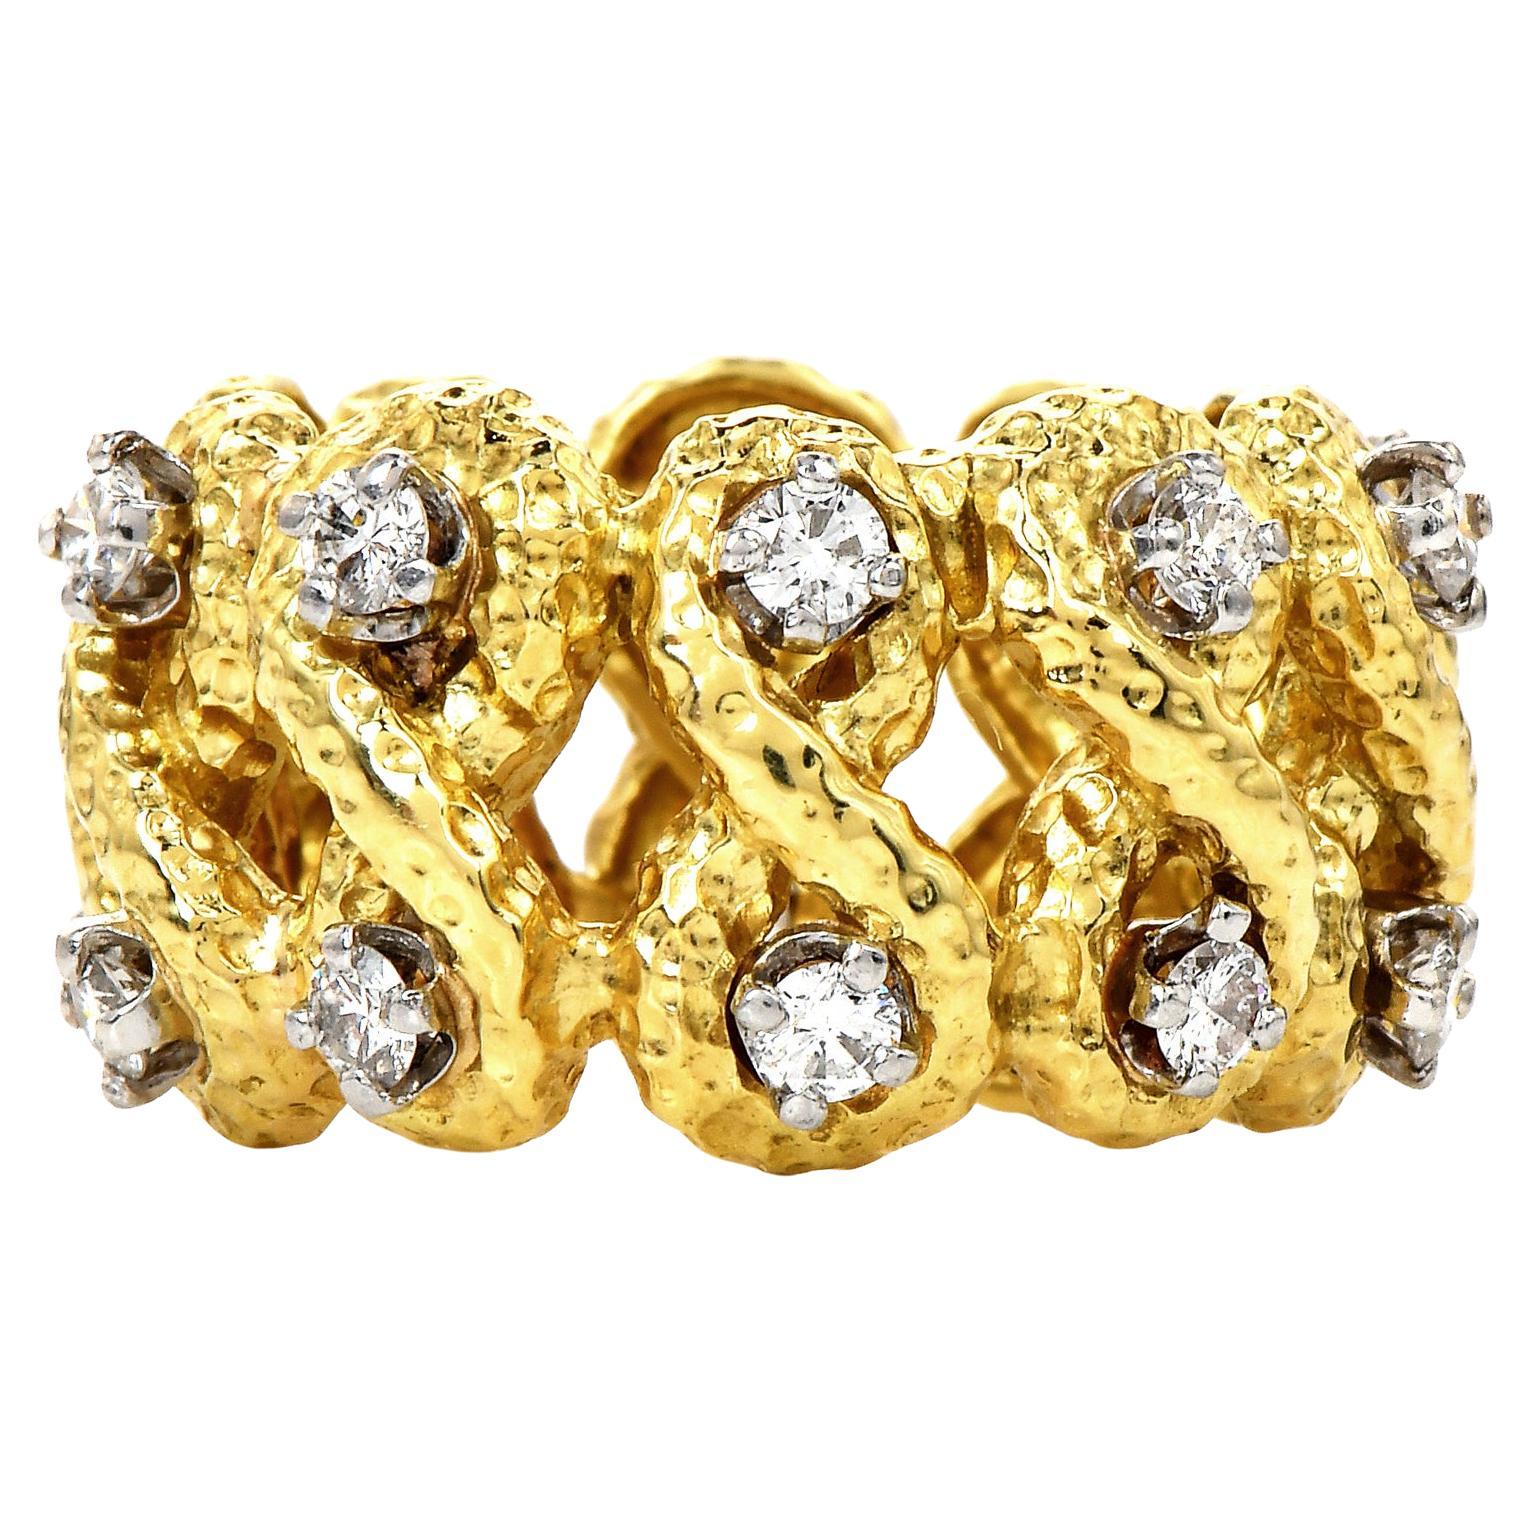 Créée par le célèbre designer David Webb, cette bague à anneau éternel est une façon glamour de mettre en valeur vos bijoux en or.

Réalisé en or jaune massif 18K avec une finition texturée et un diamant serti sur le platine.

Tous les maillons en